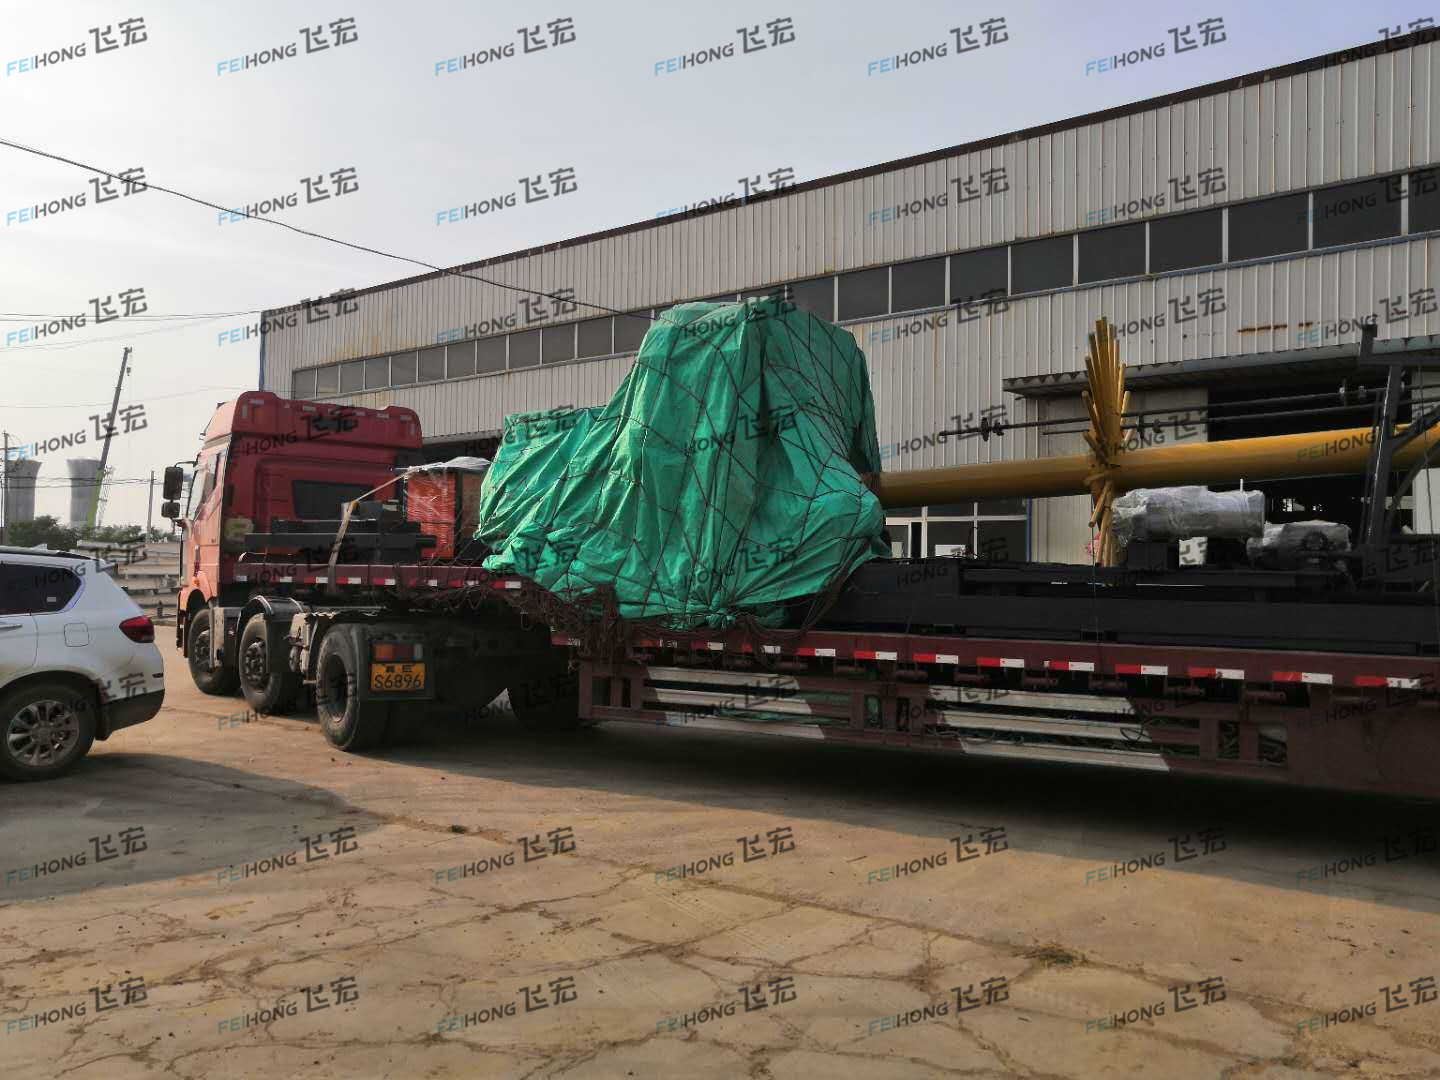 祝贺飞宏3套钢筋加工设备进驻中铁五局河北石衡沧港铁路项目施工现场